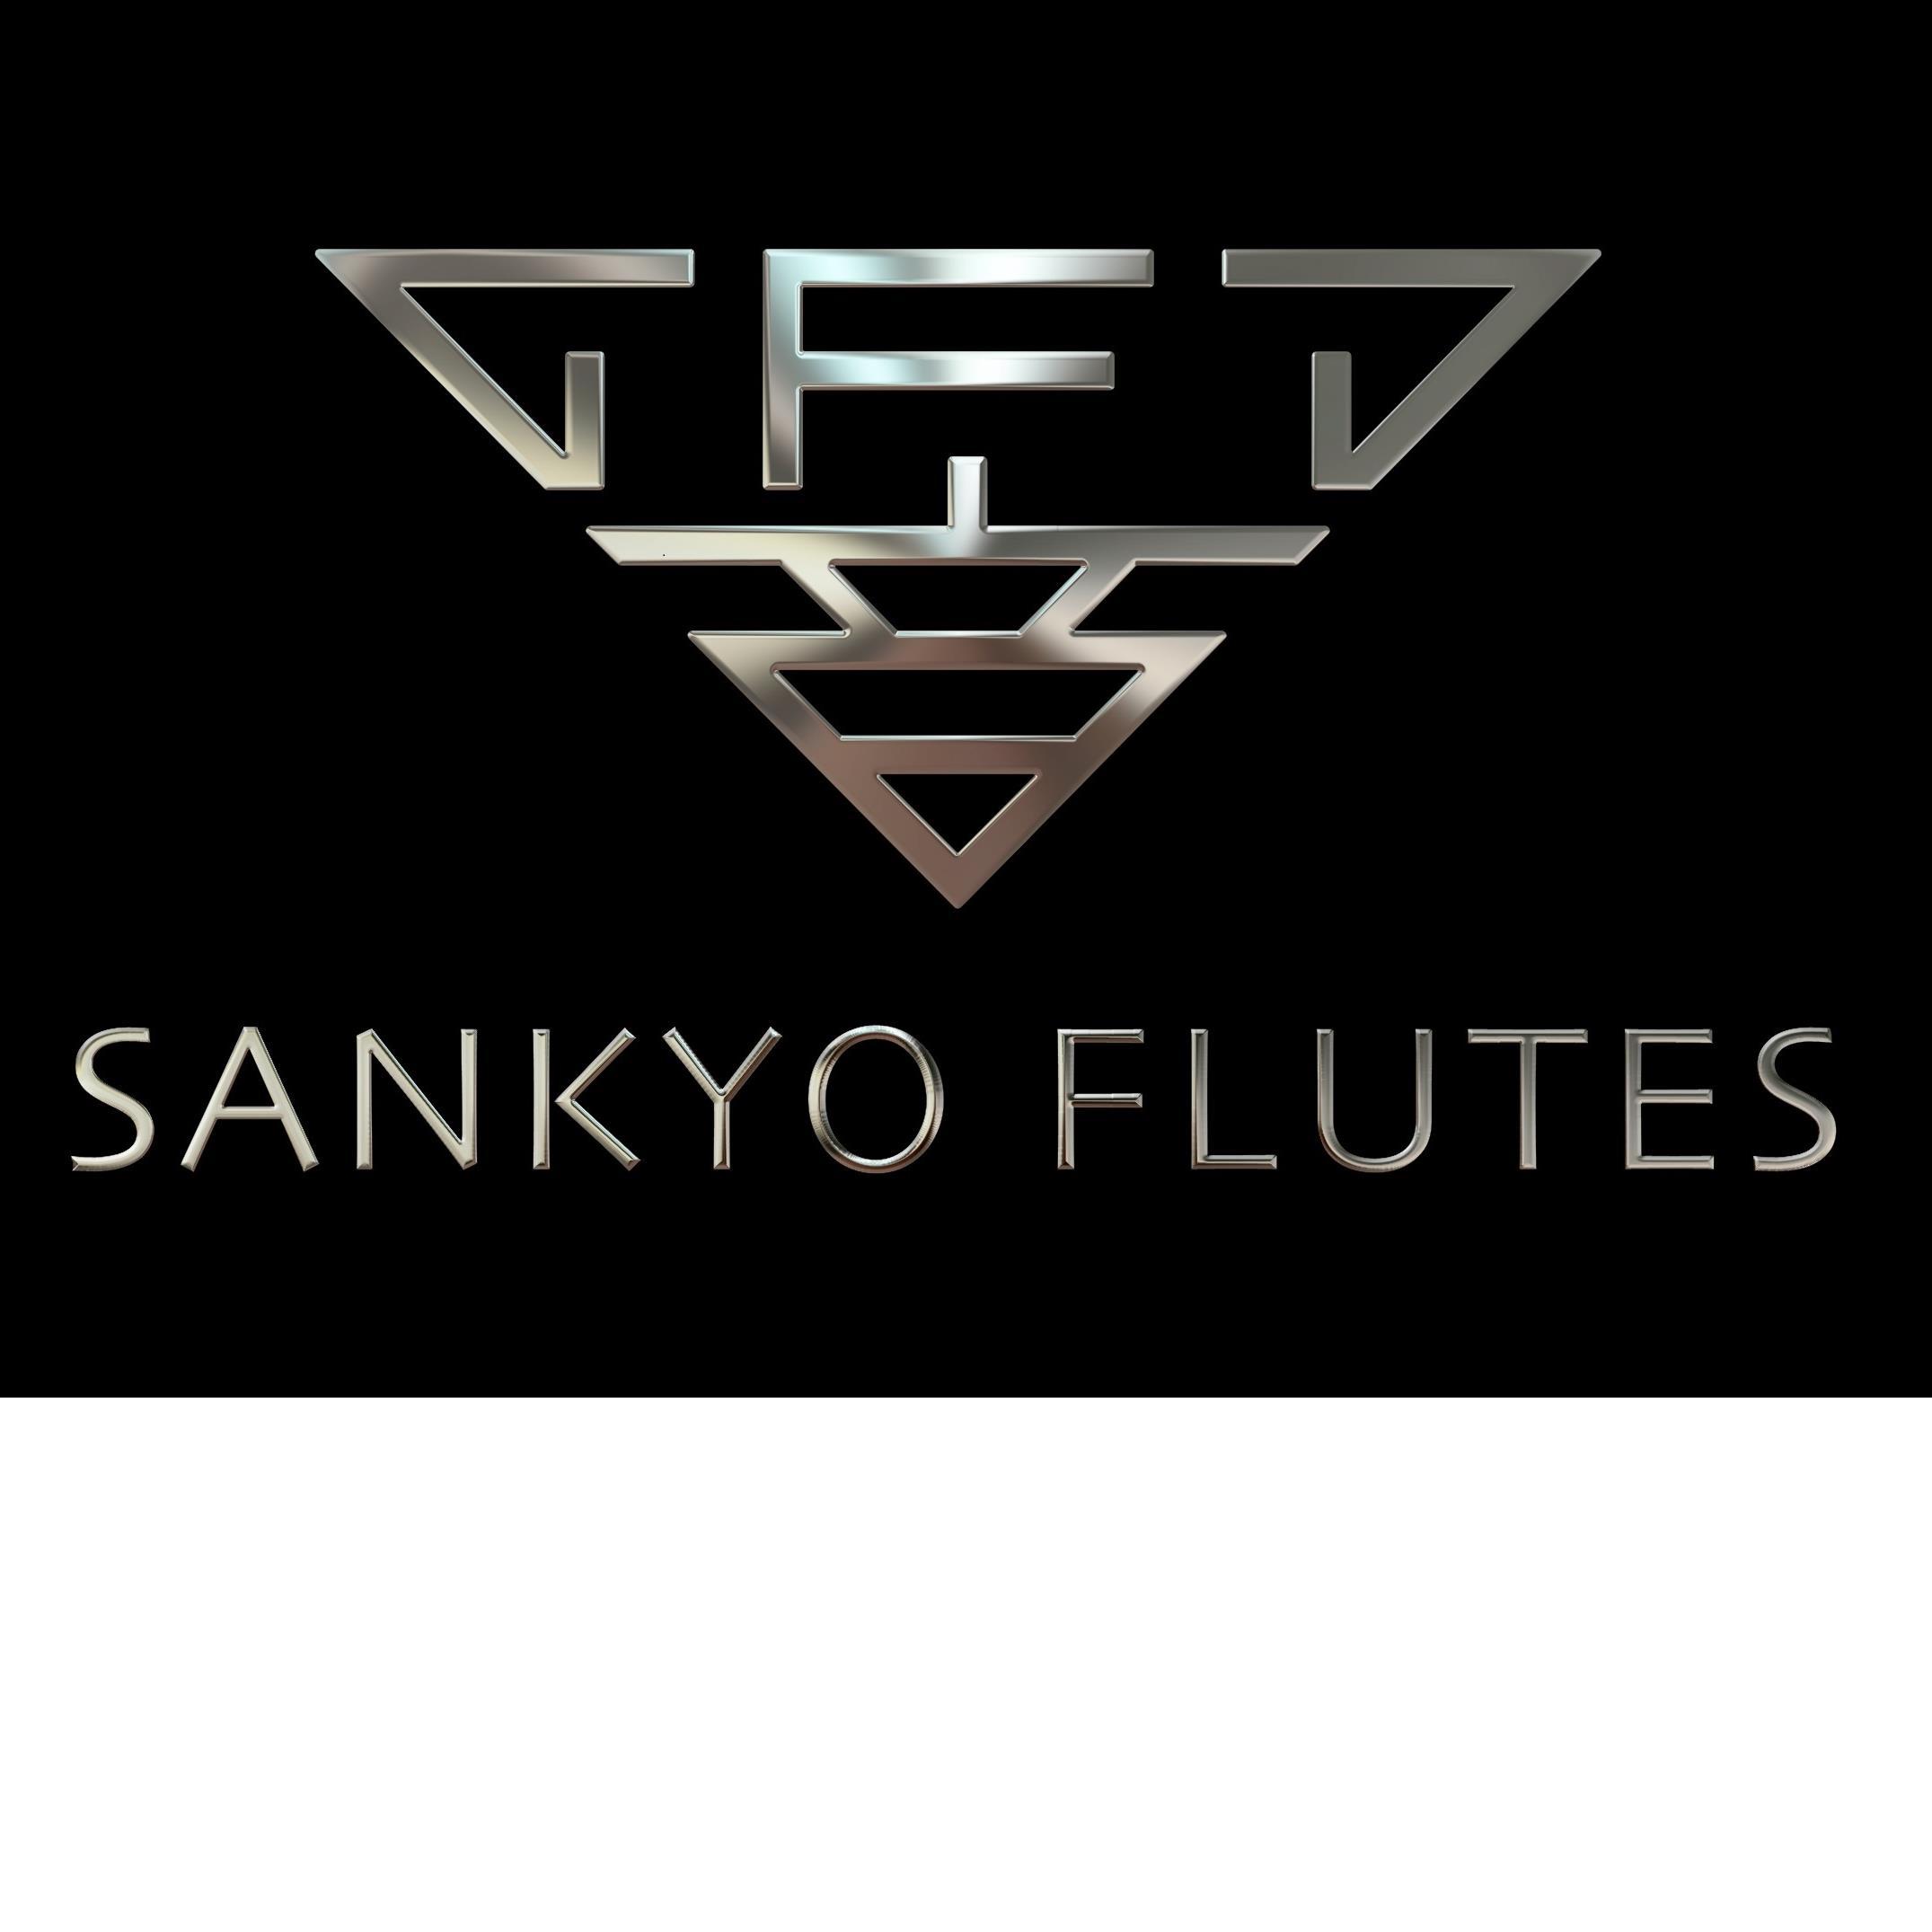 三響フルート製作所です。Sankyo Flutes capture a sound that inspires and fulfills. Explore the richness, tradition, beauty, and sound of Sankyo.